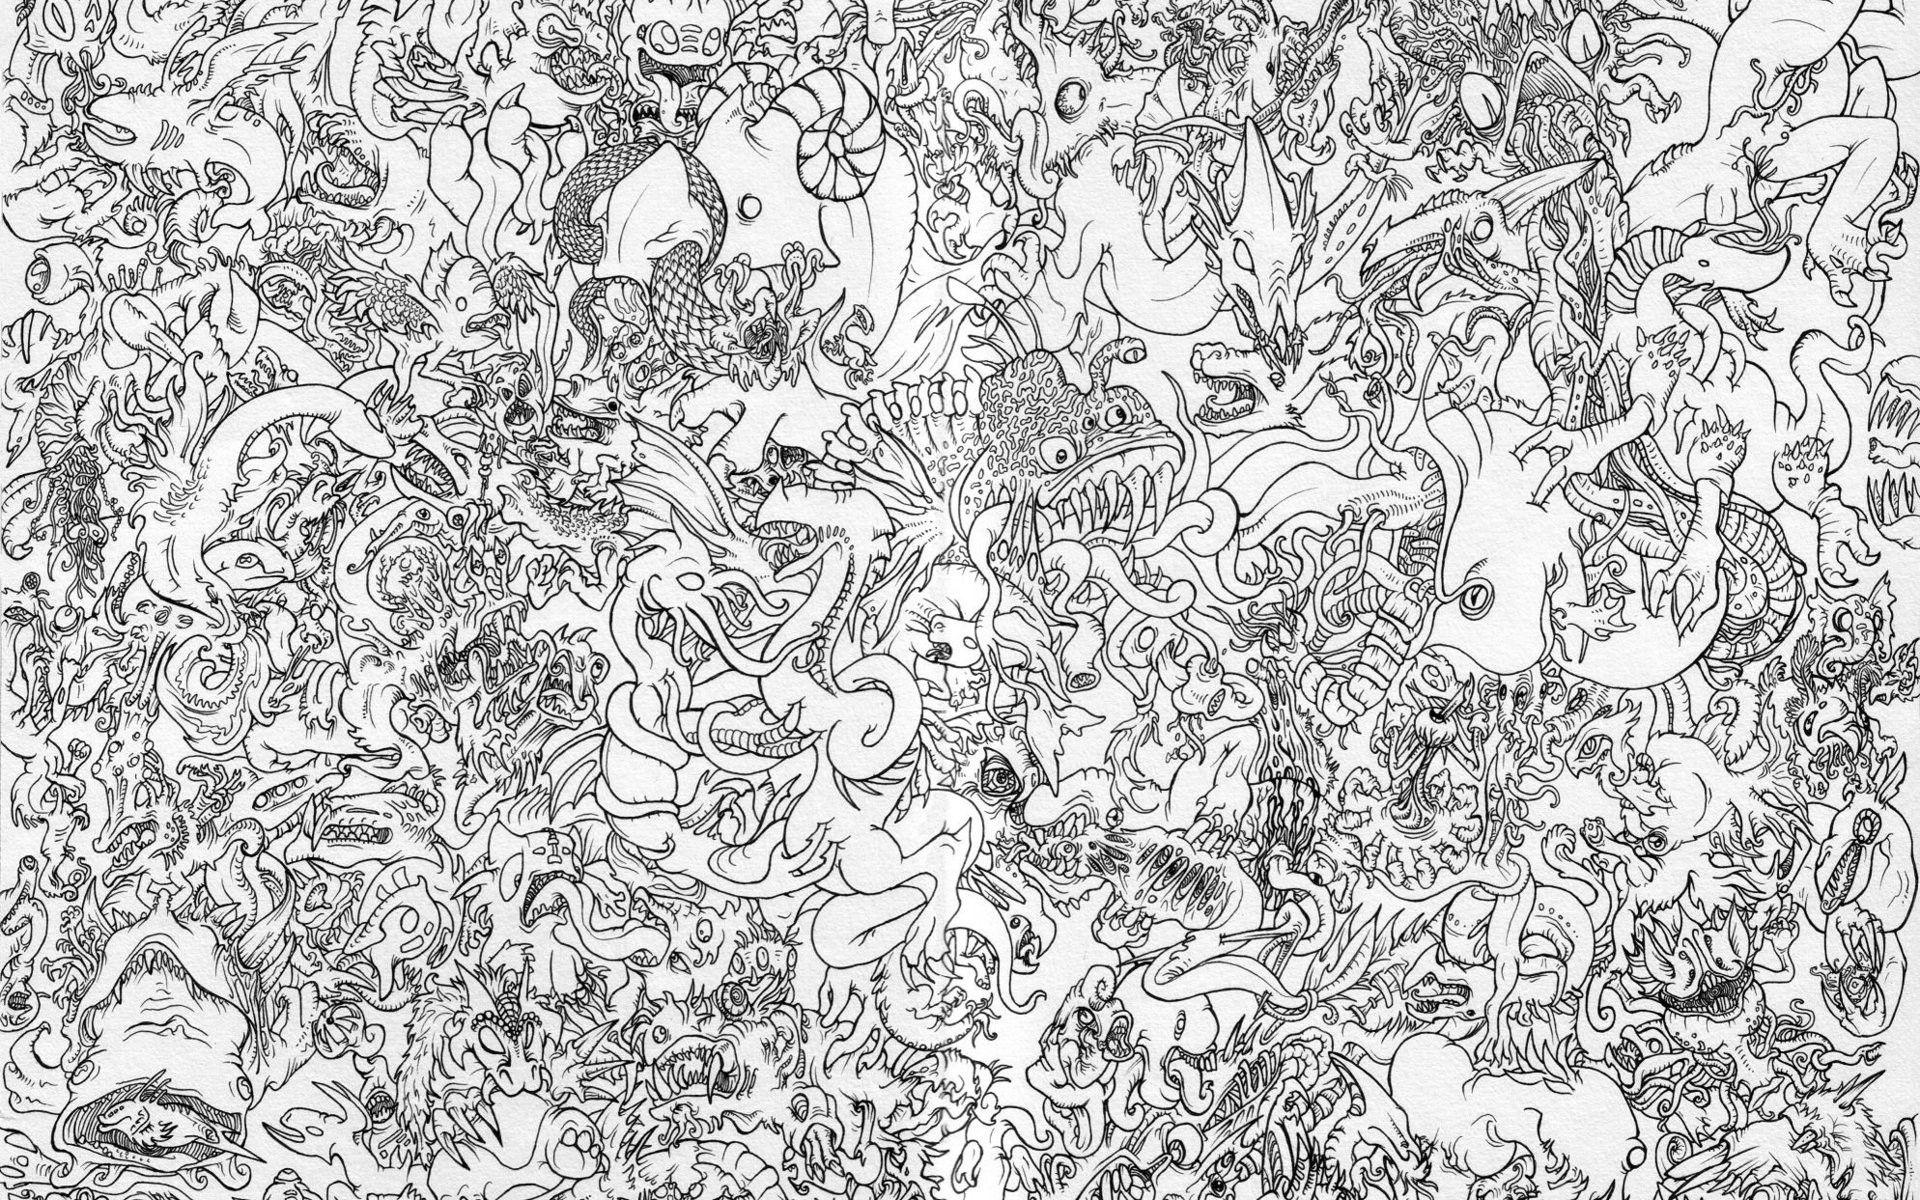 Monsters drawings wallpaperx1200